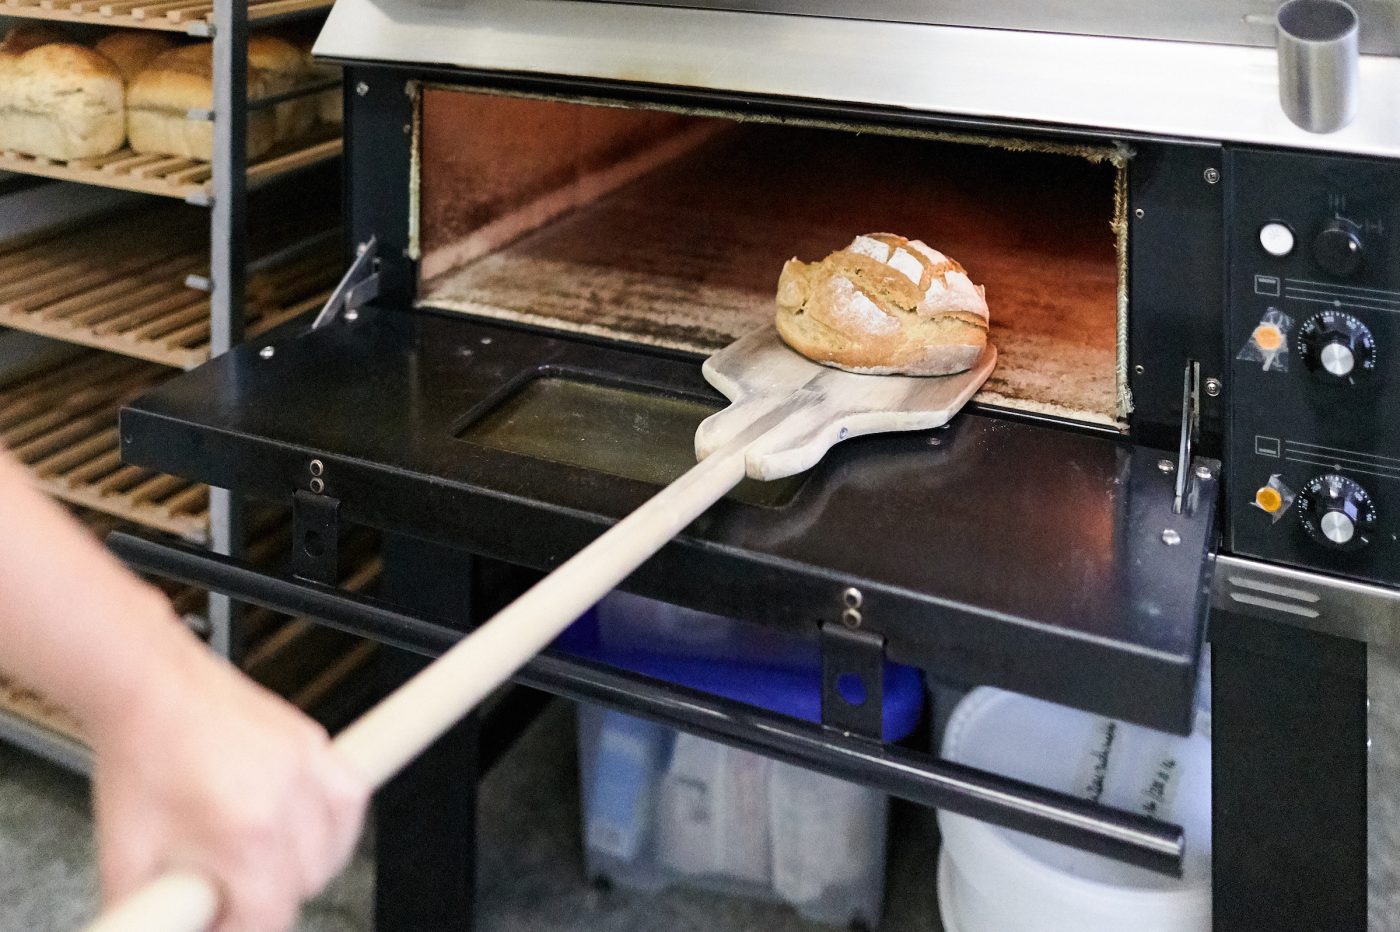 Eine Hand nimmt das auf der hölzernen Brotkelle liegende Brot aus dem Industriebackofen raus